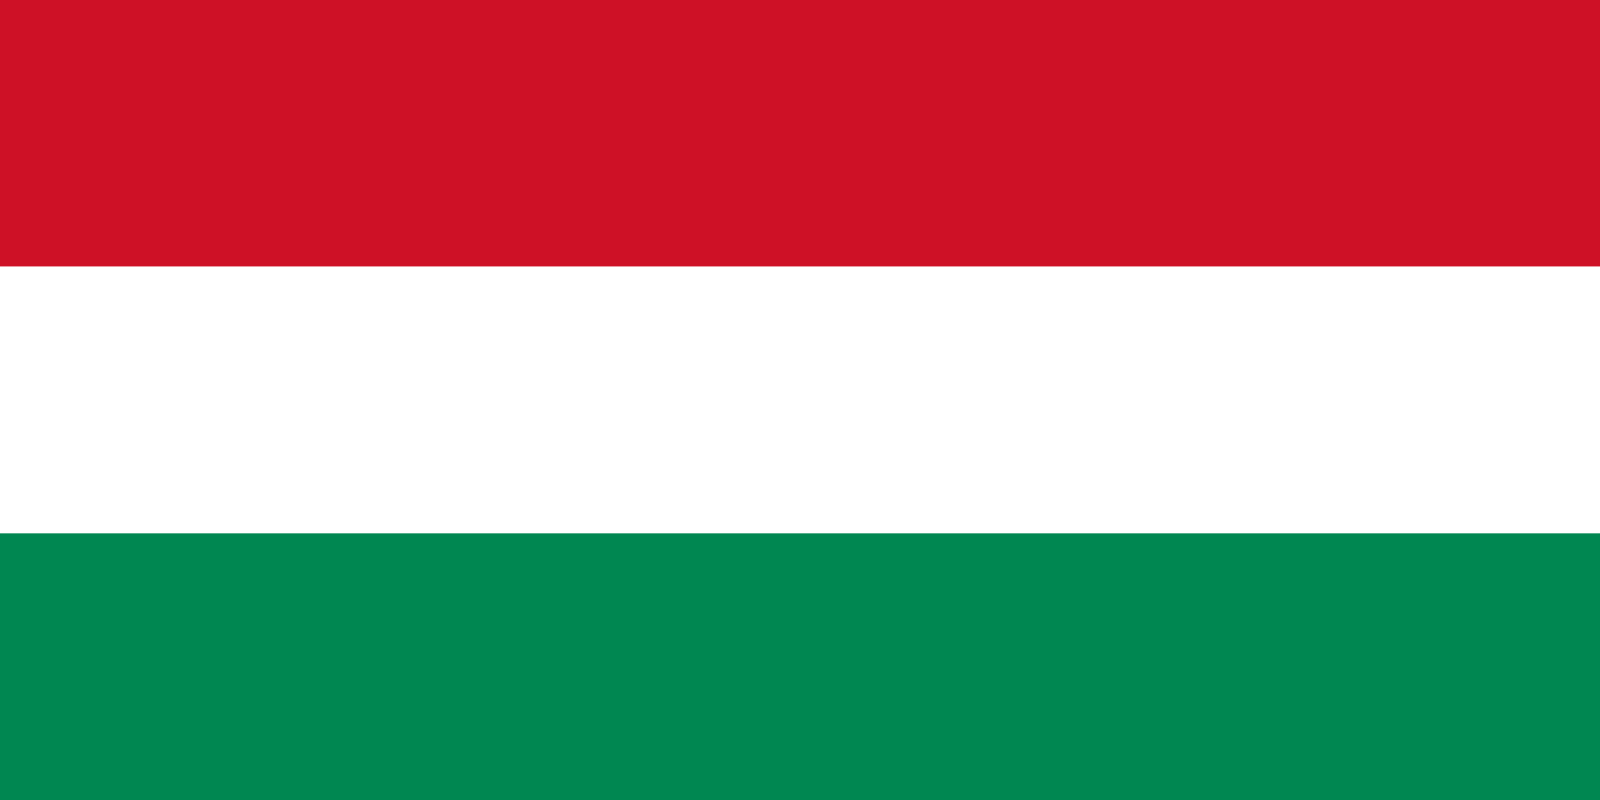 Bild der Staatsflagge Ungarn - mit einer Auflösung von 1600x800 - Europa